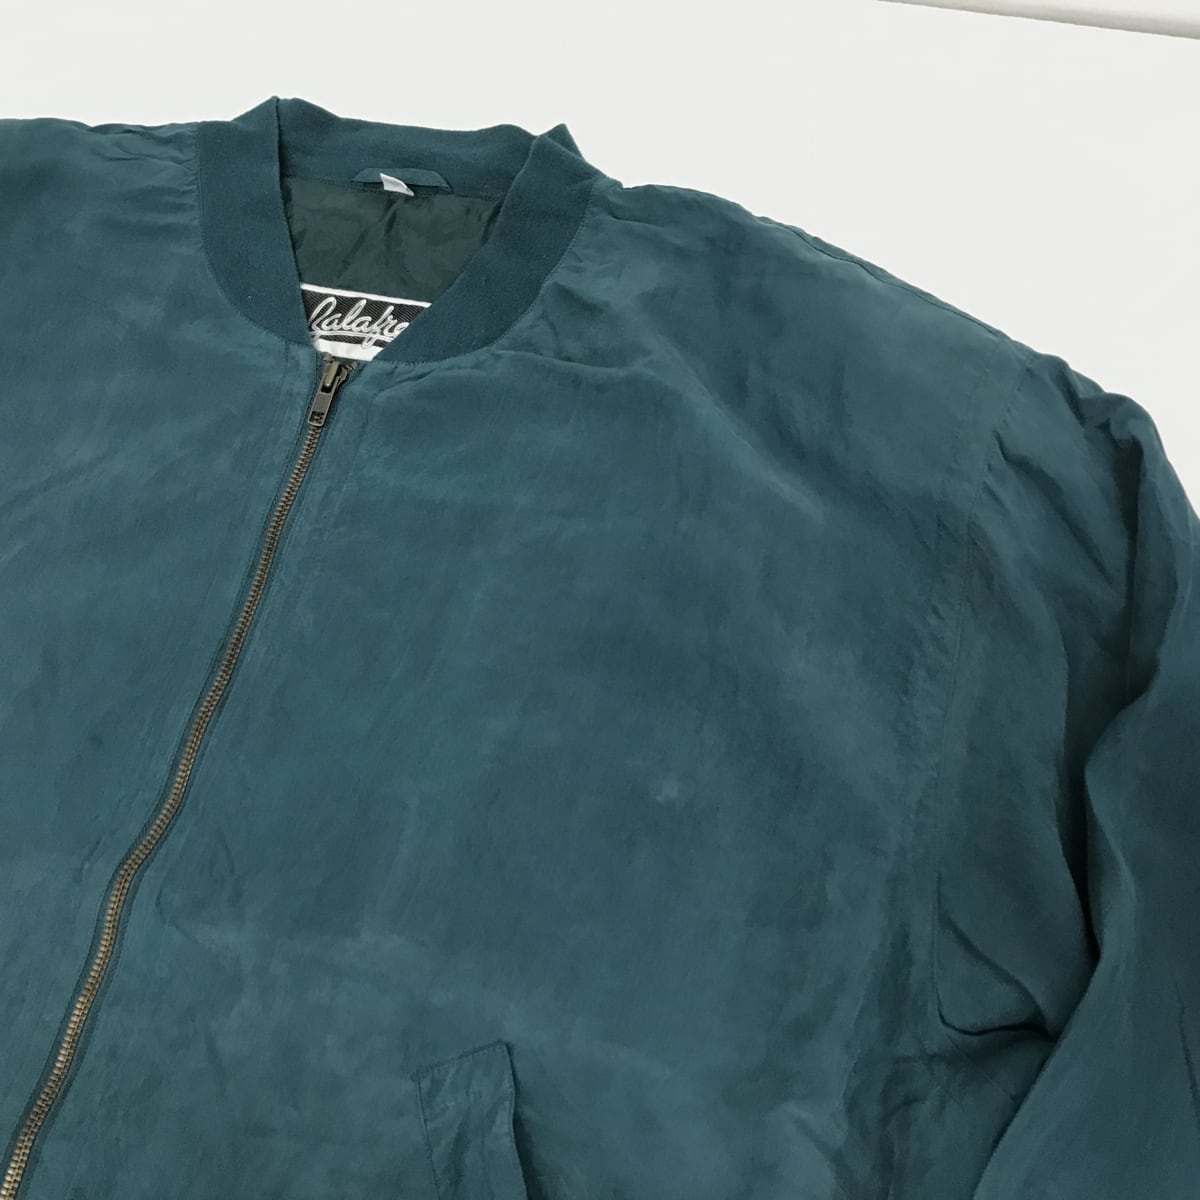 ZALAFRE 90年代あたり シルクジャンパー シルクブルゾン シルクジャケット ダークエメラルドグリーン 3XL 長袖 -12